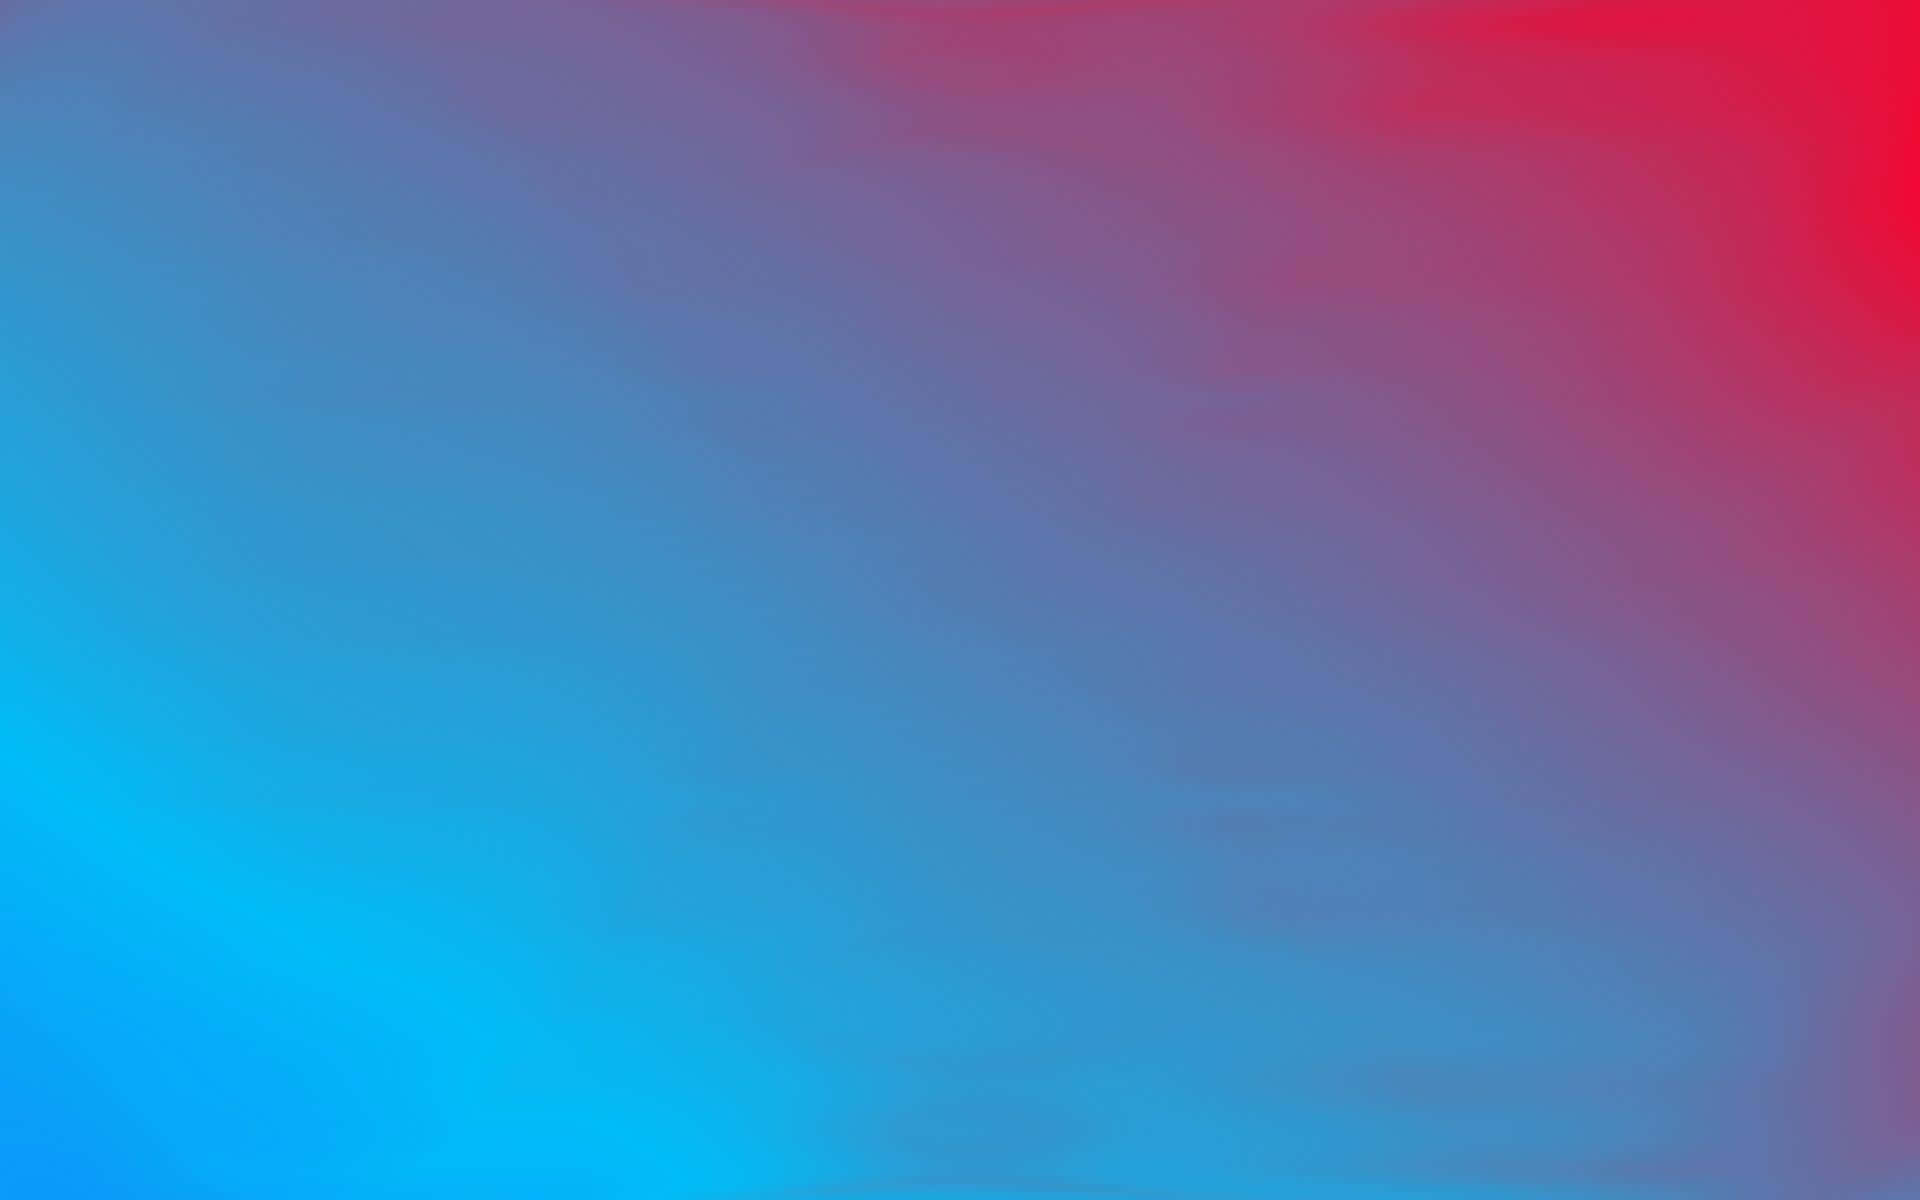 Einhintergrund In Blau Und Rot Mit Einem Blau-roten Farbverlauf